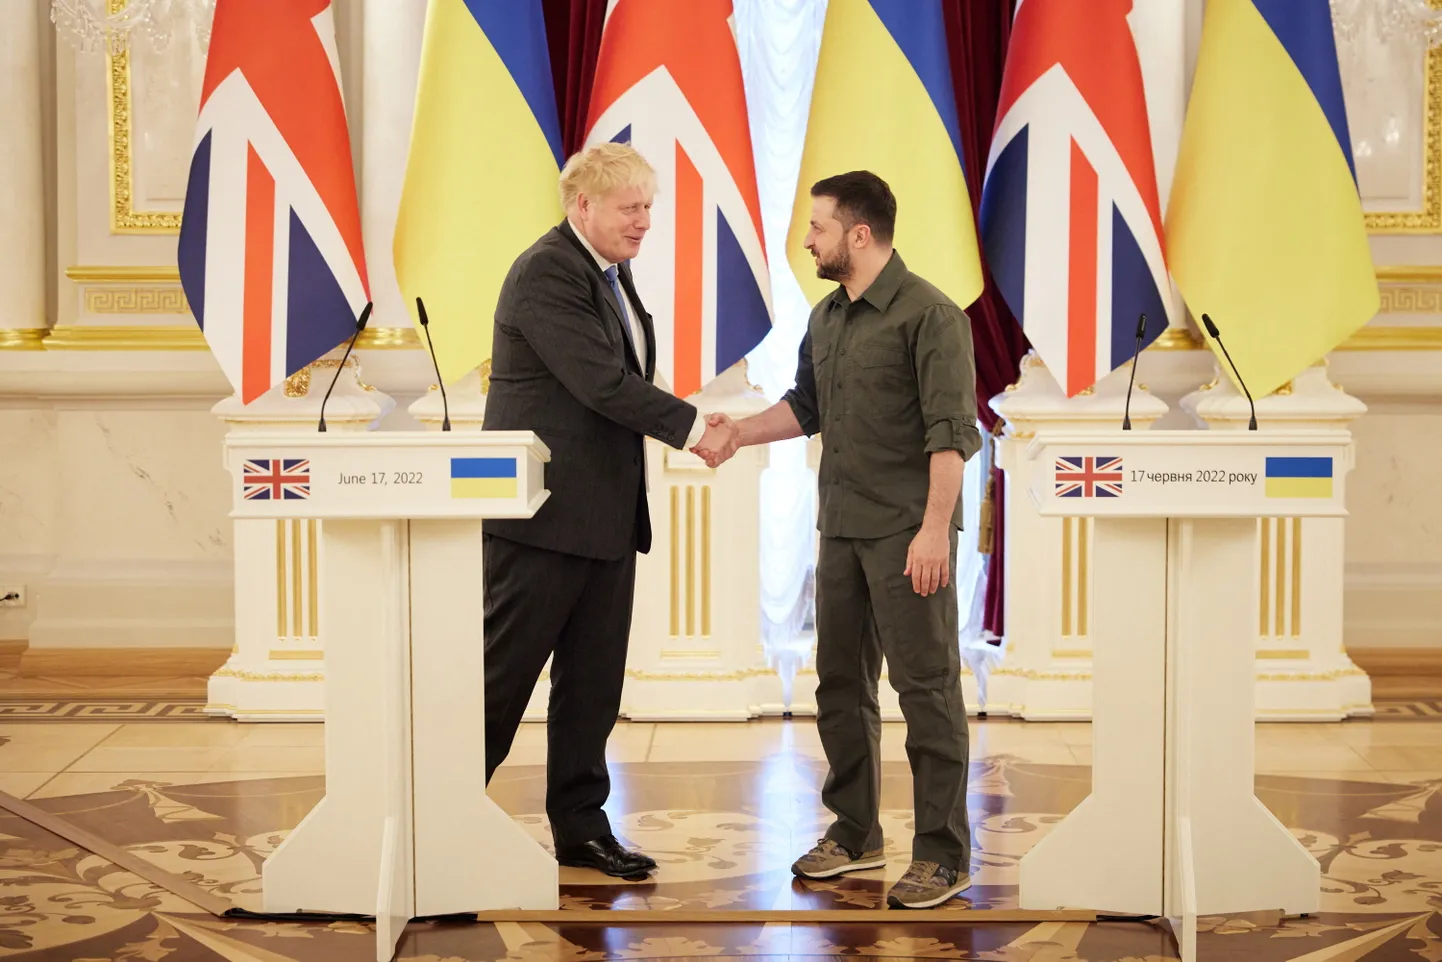 Briti peaminister Boris Johnson ja Ukraina president Volodõmõr Zelenskõi suruvad kätt pärast ühist pressibriifingut.